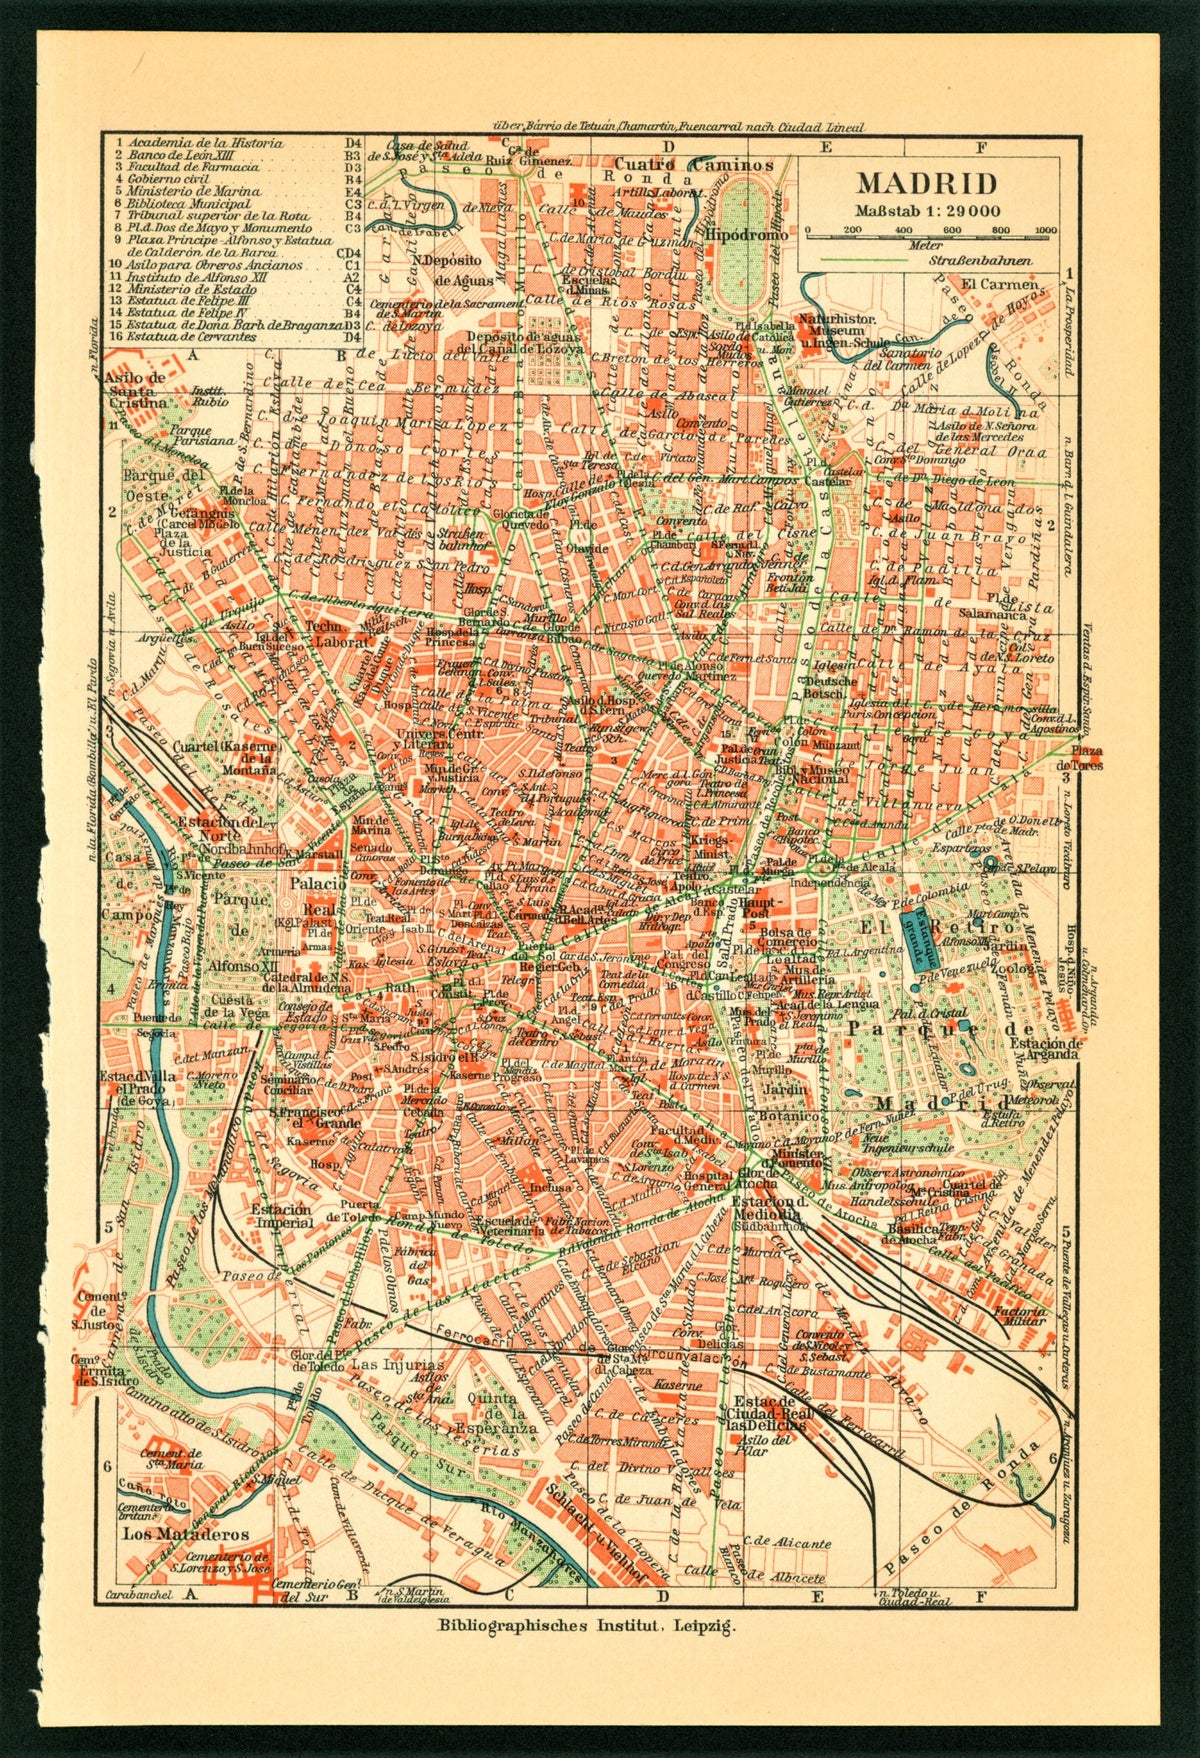 Madrid, Spain City Plan- Antique Map - Authentic Vintage Antique Print